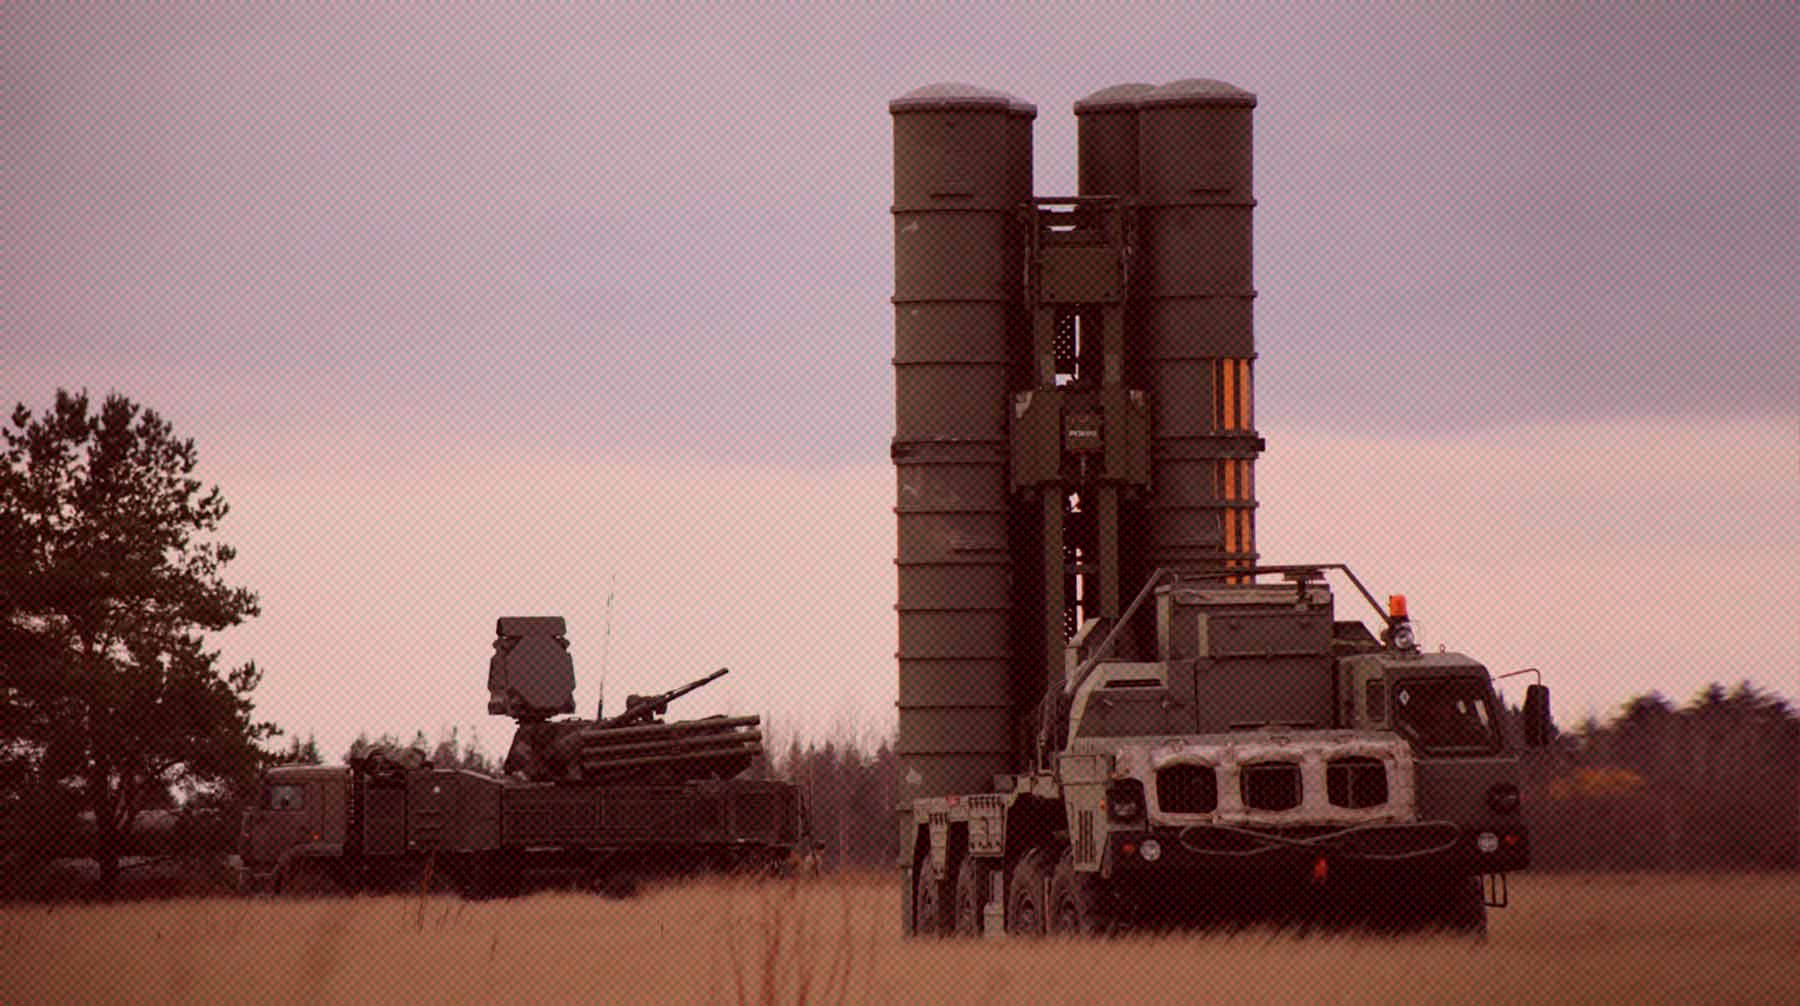 Dailystorm - Экс-начальник зенитно-ракетных войск спецназначения: ПВО в Москве установили во избежание диверсий ВСУ с помощью беспилотников